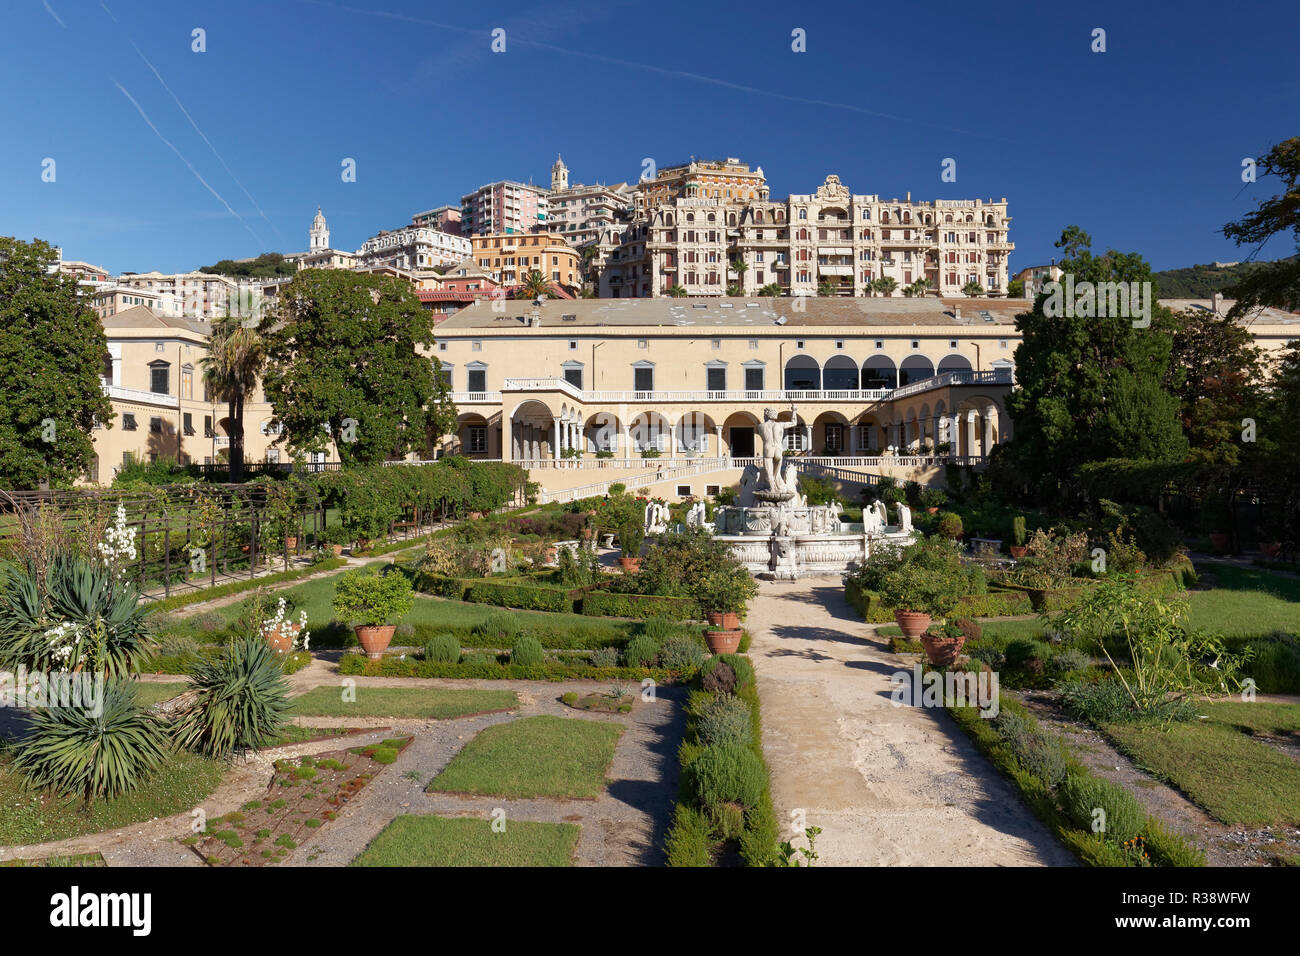 Villa of the Prince, Villa del Principe, Palace of Andrea Doria, Genoa, Liguria, Italy Stock Photo